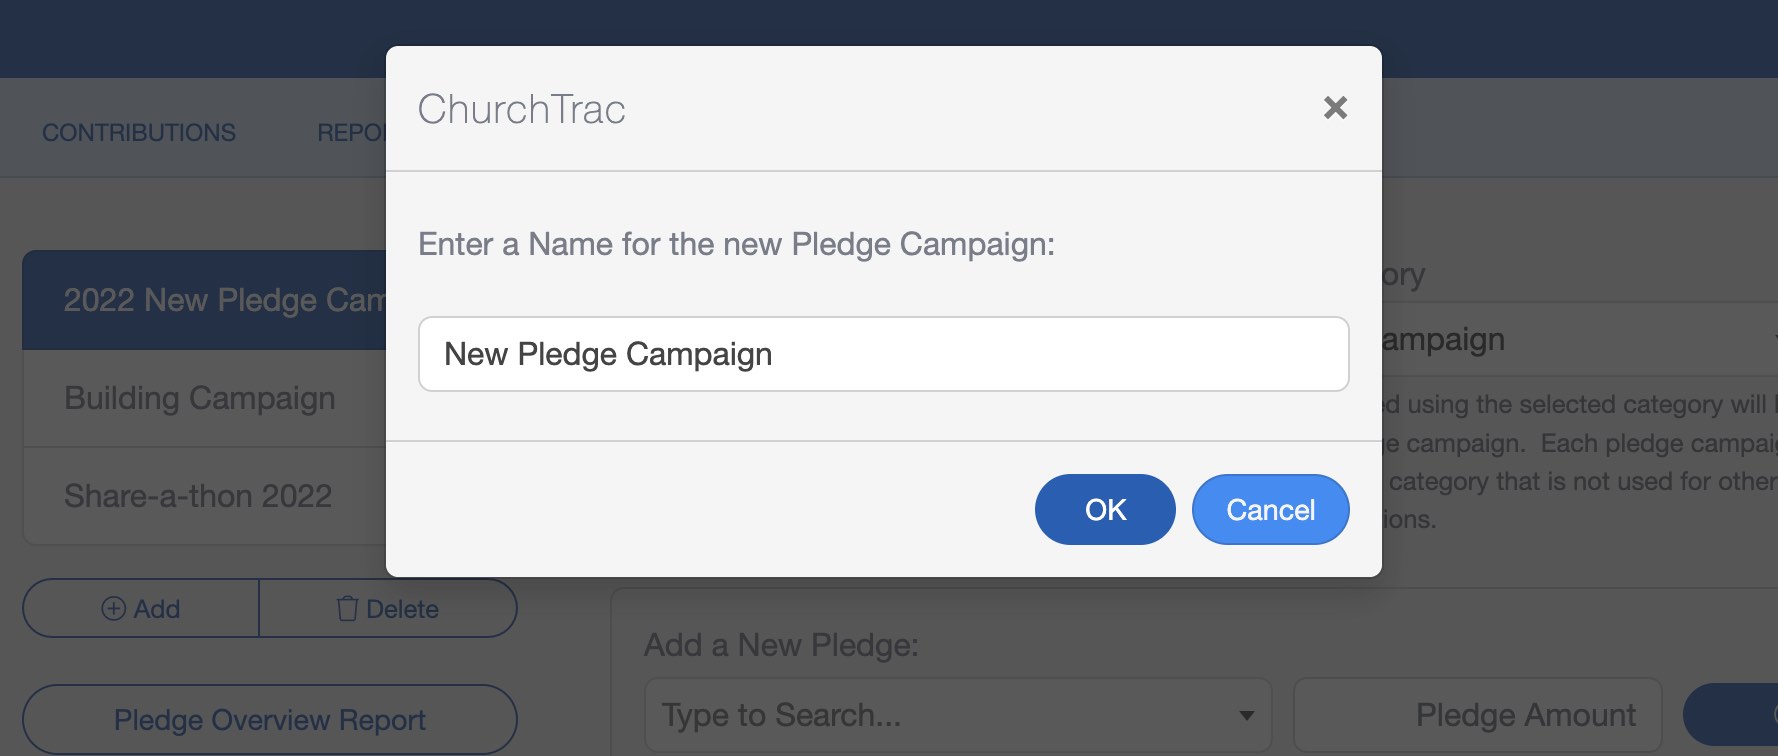 New Pledge Campaign